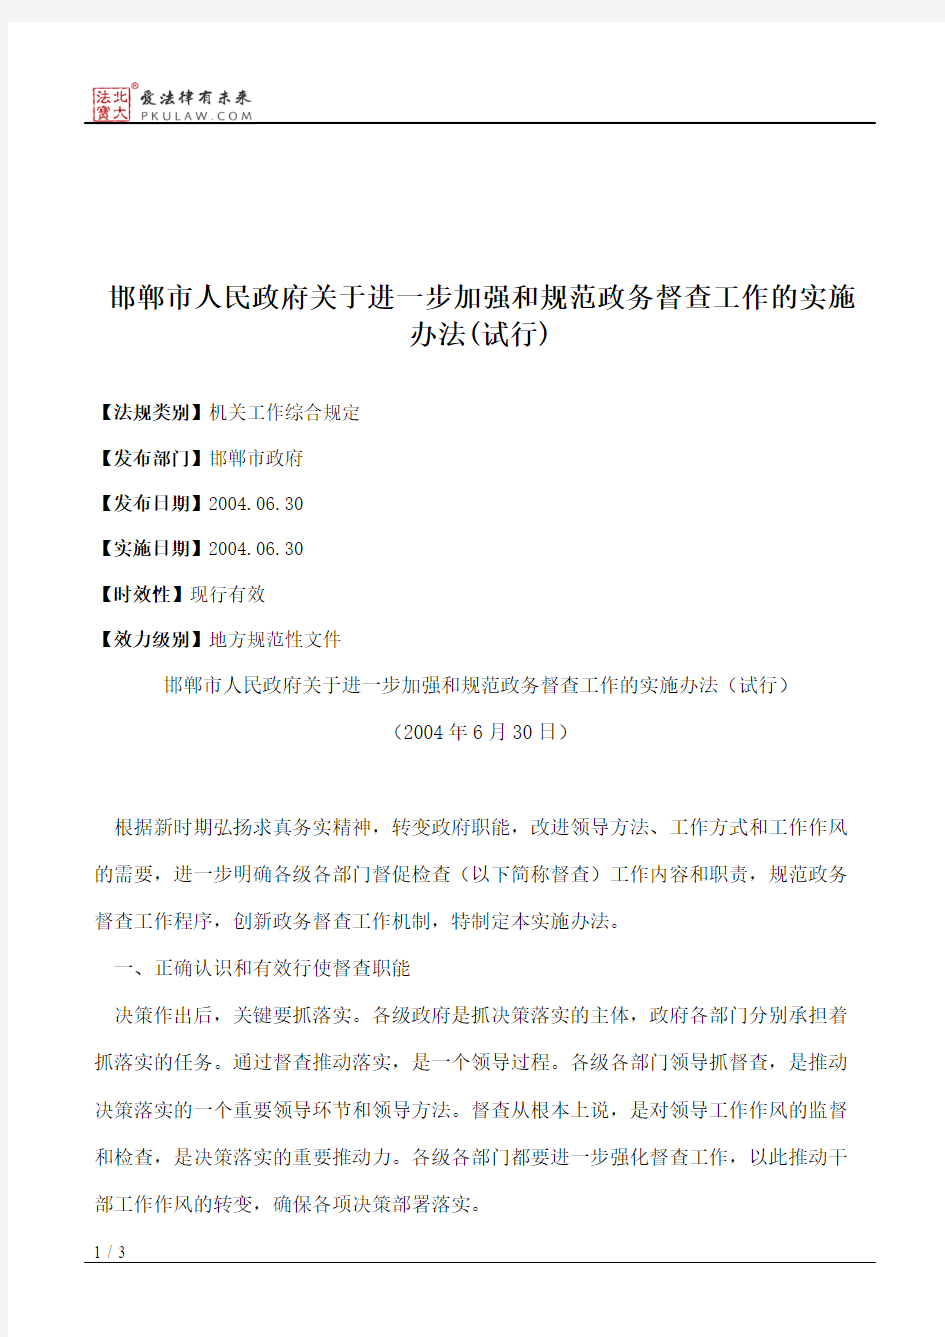 邯郸市人民政府关于进一步加强和规范政务督查工作的实施办法(试行)